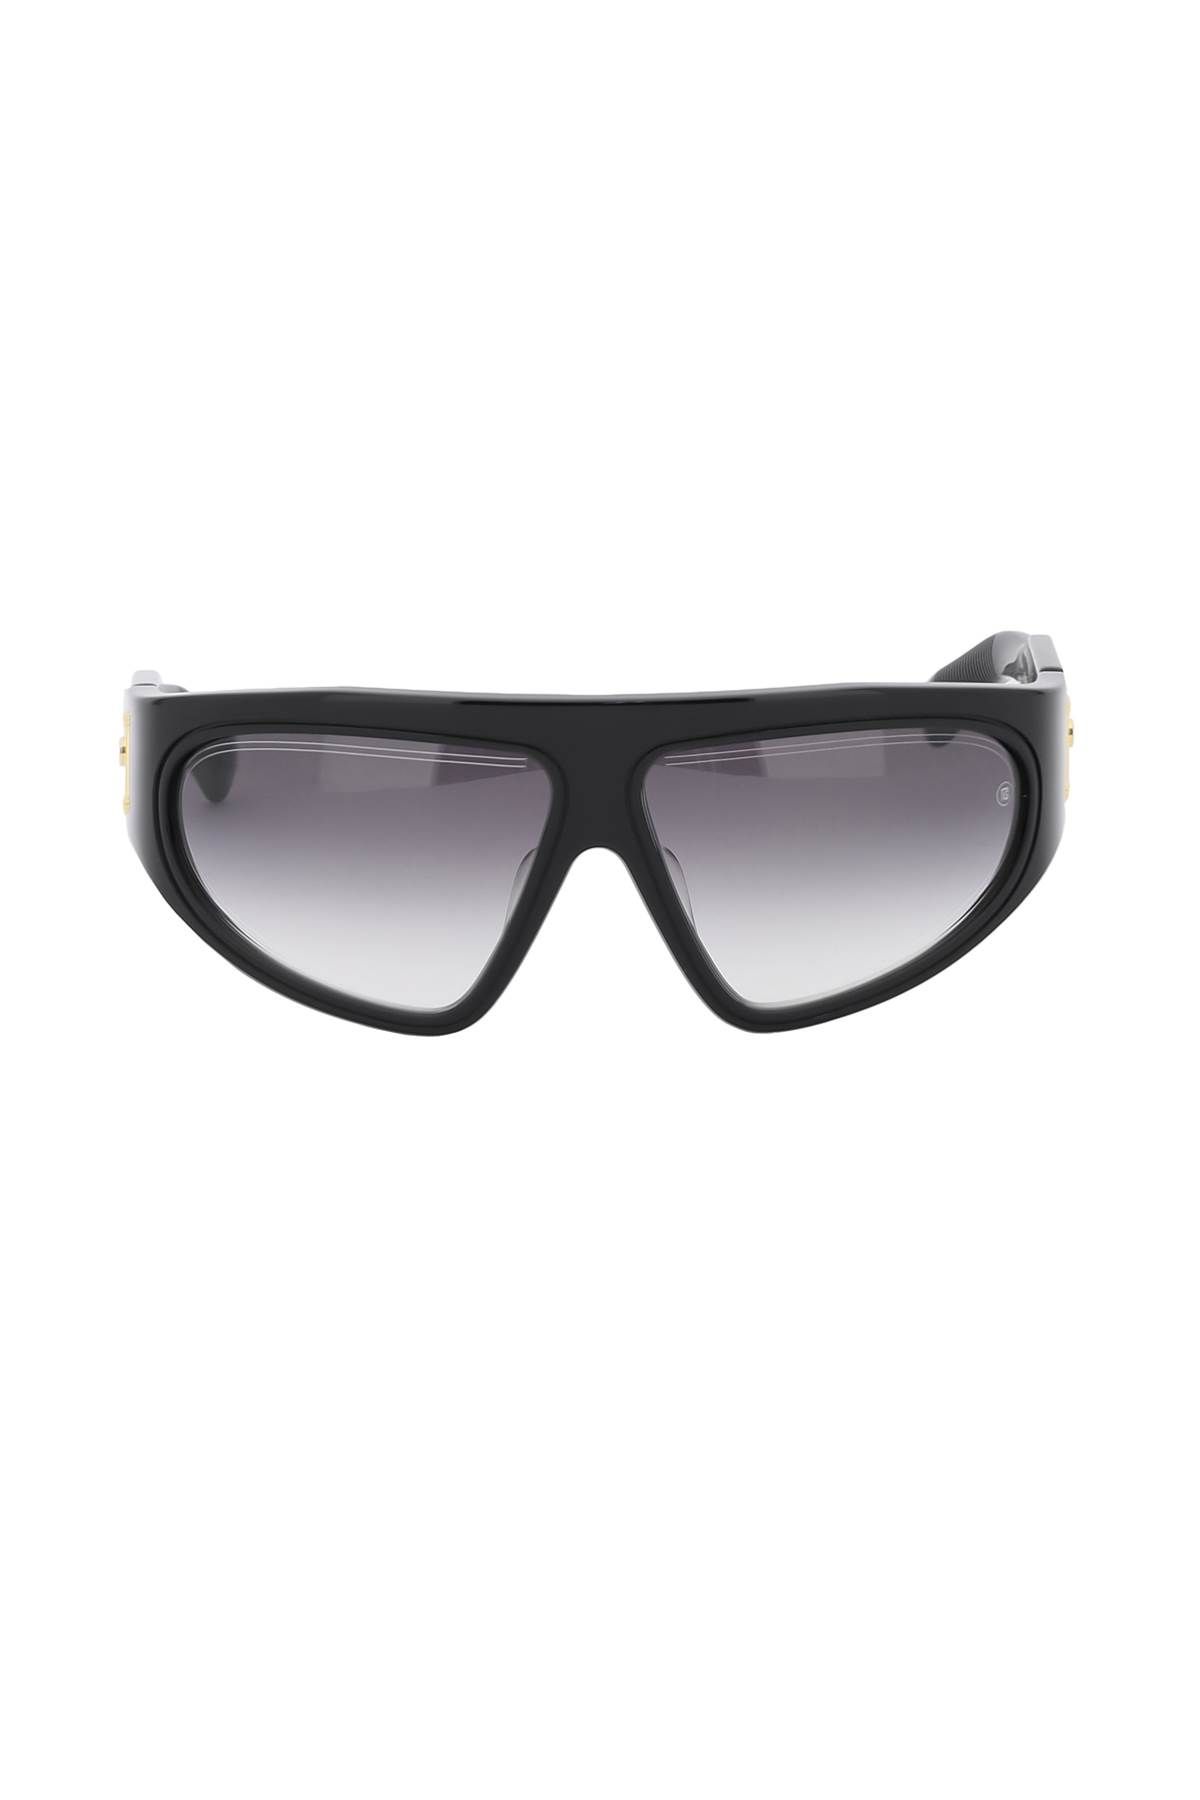 Shop Balmain B-escape Sunglasses In Black